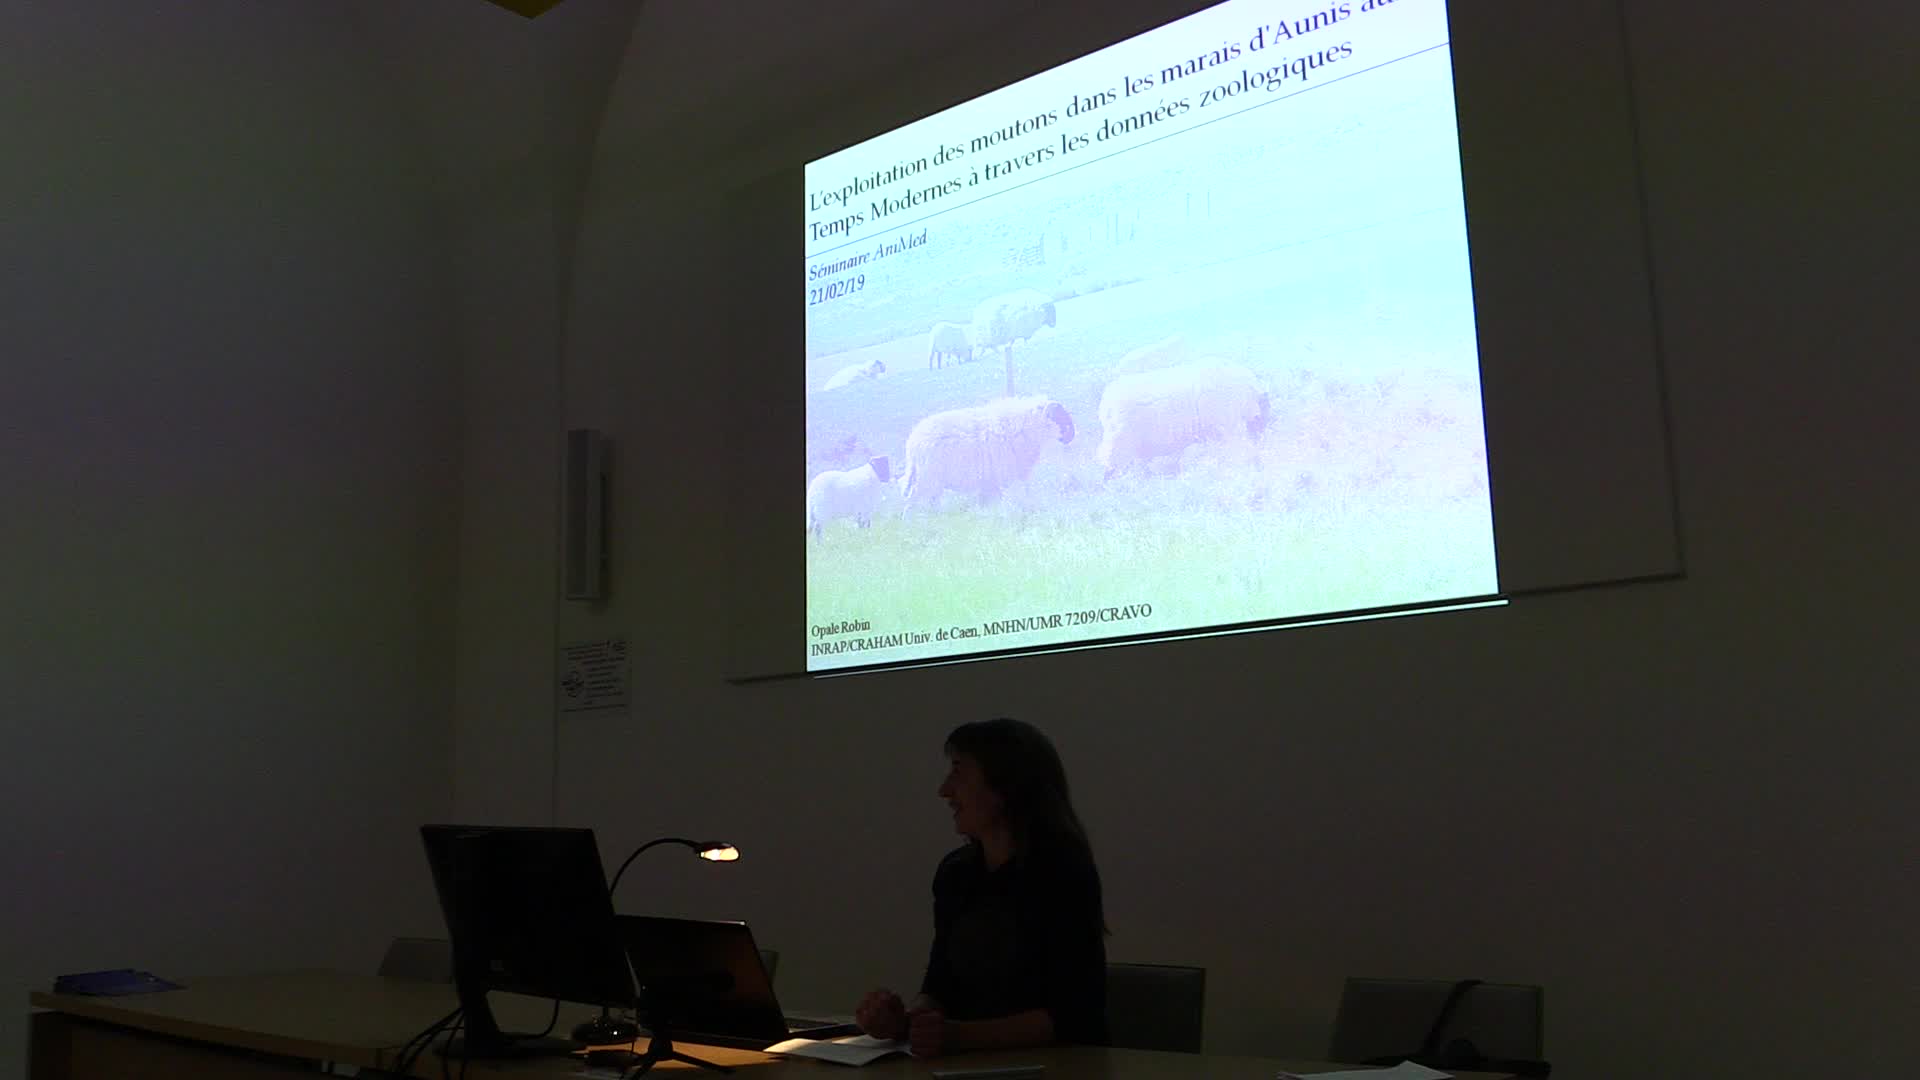 L'exploitation des moutons dans les marais de l'Aunis aux Temps Modernes à travers les données archéozoologiques